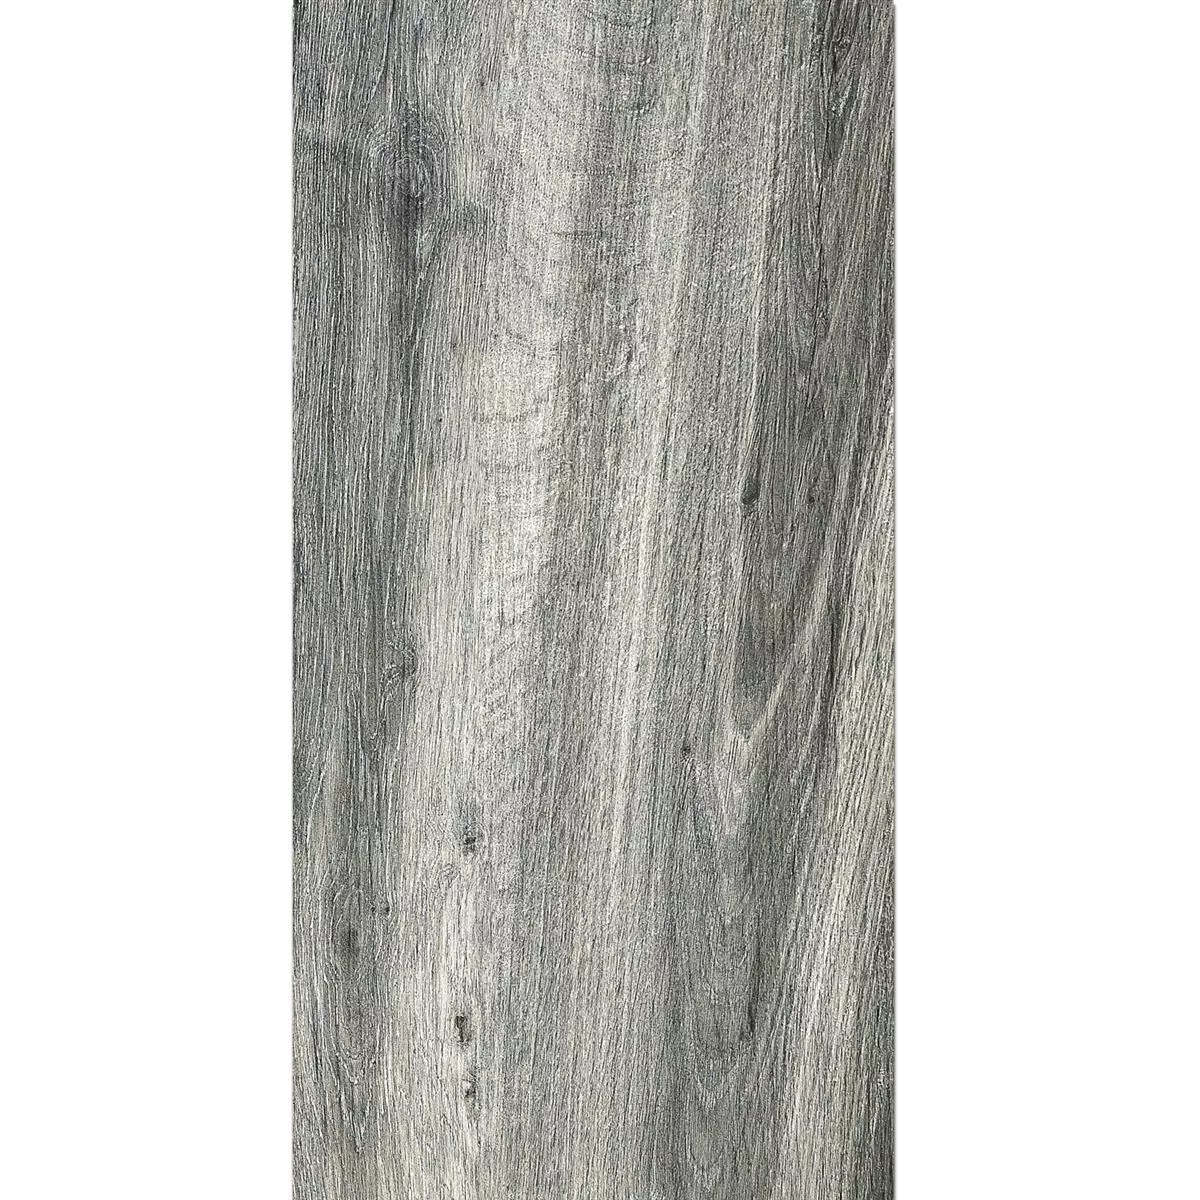 Échantillon Dalles De Terrasse Starwood Imitation Bois Grey 45x90cm